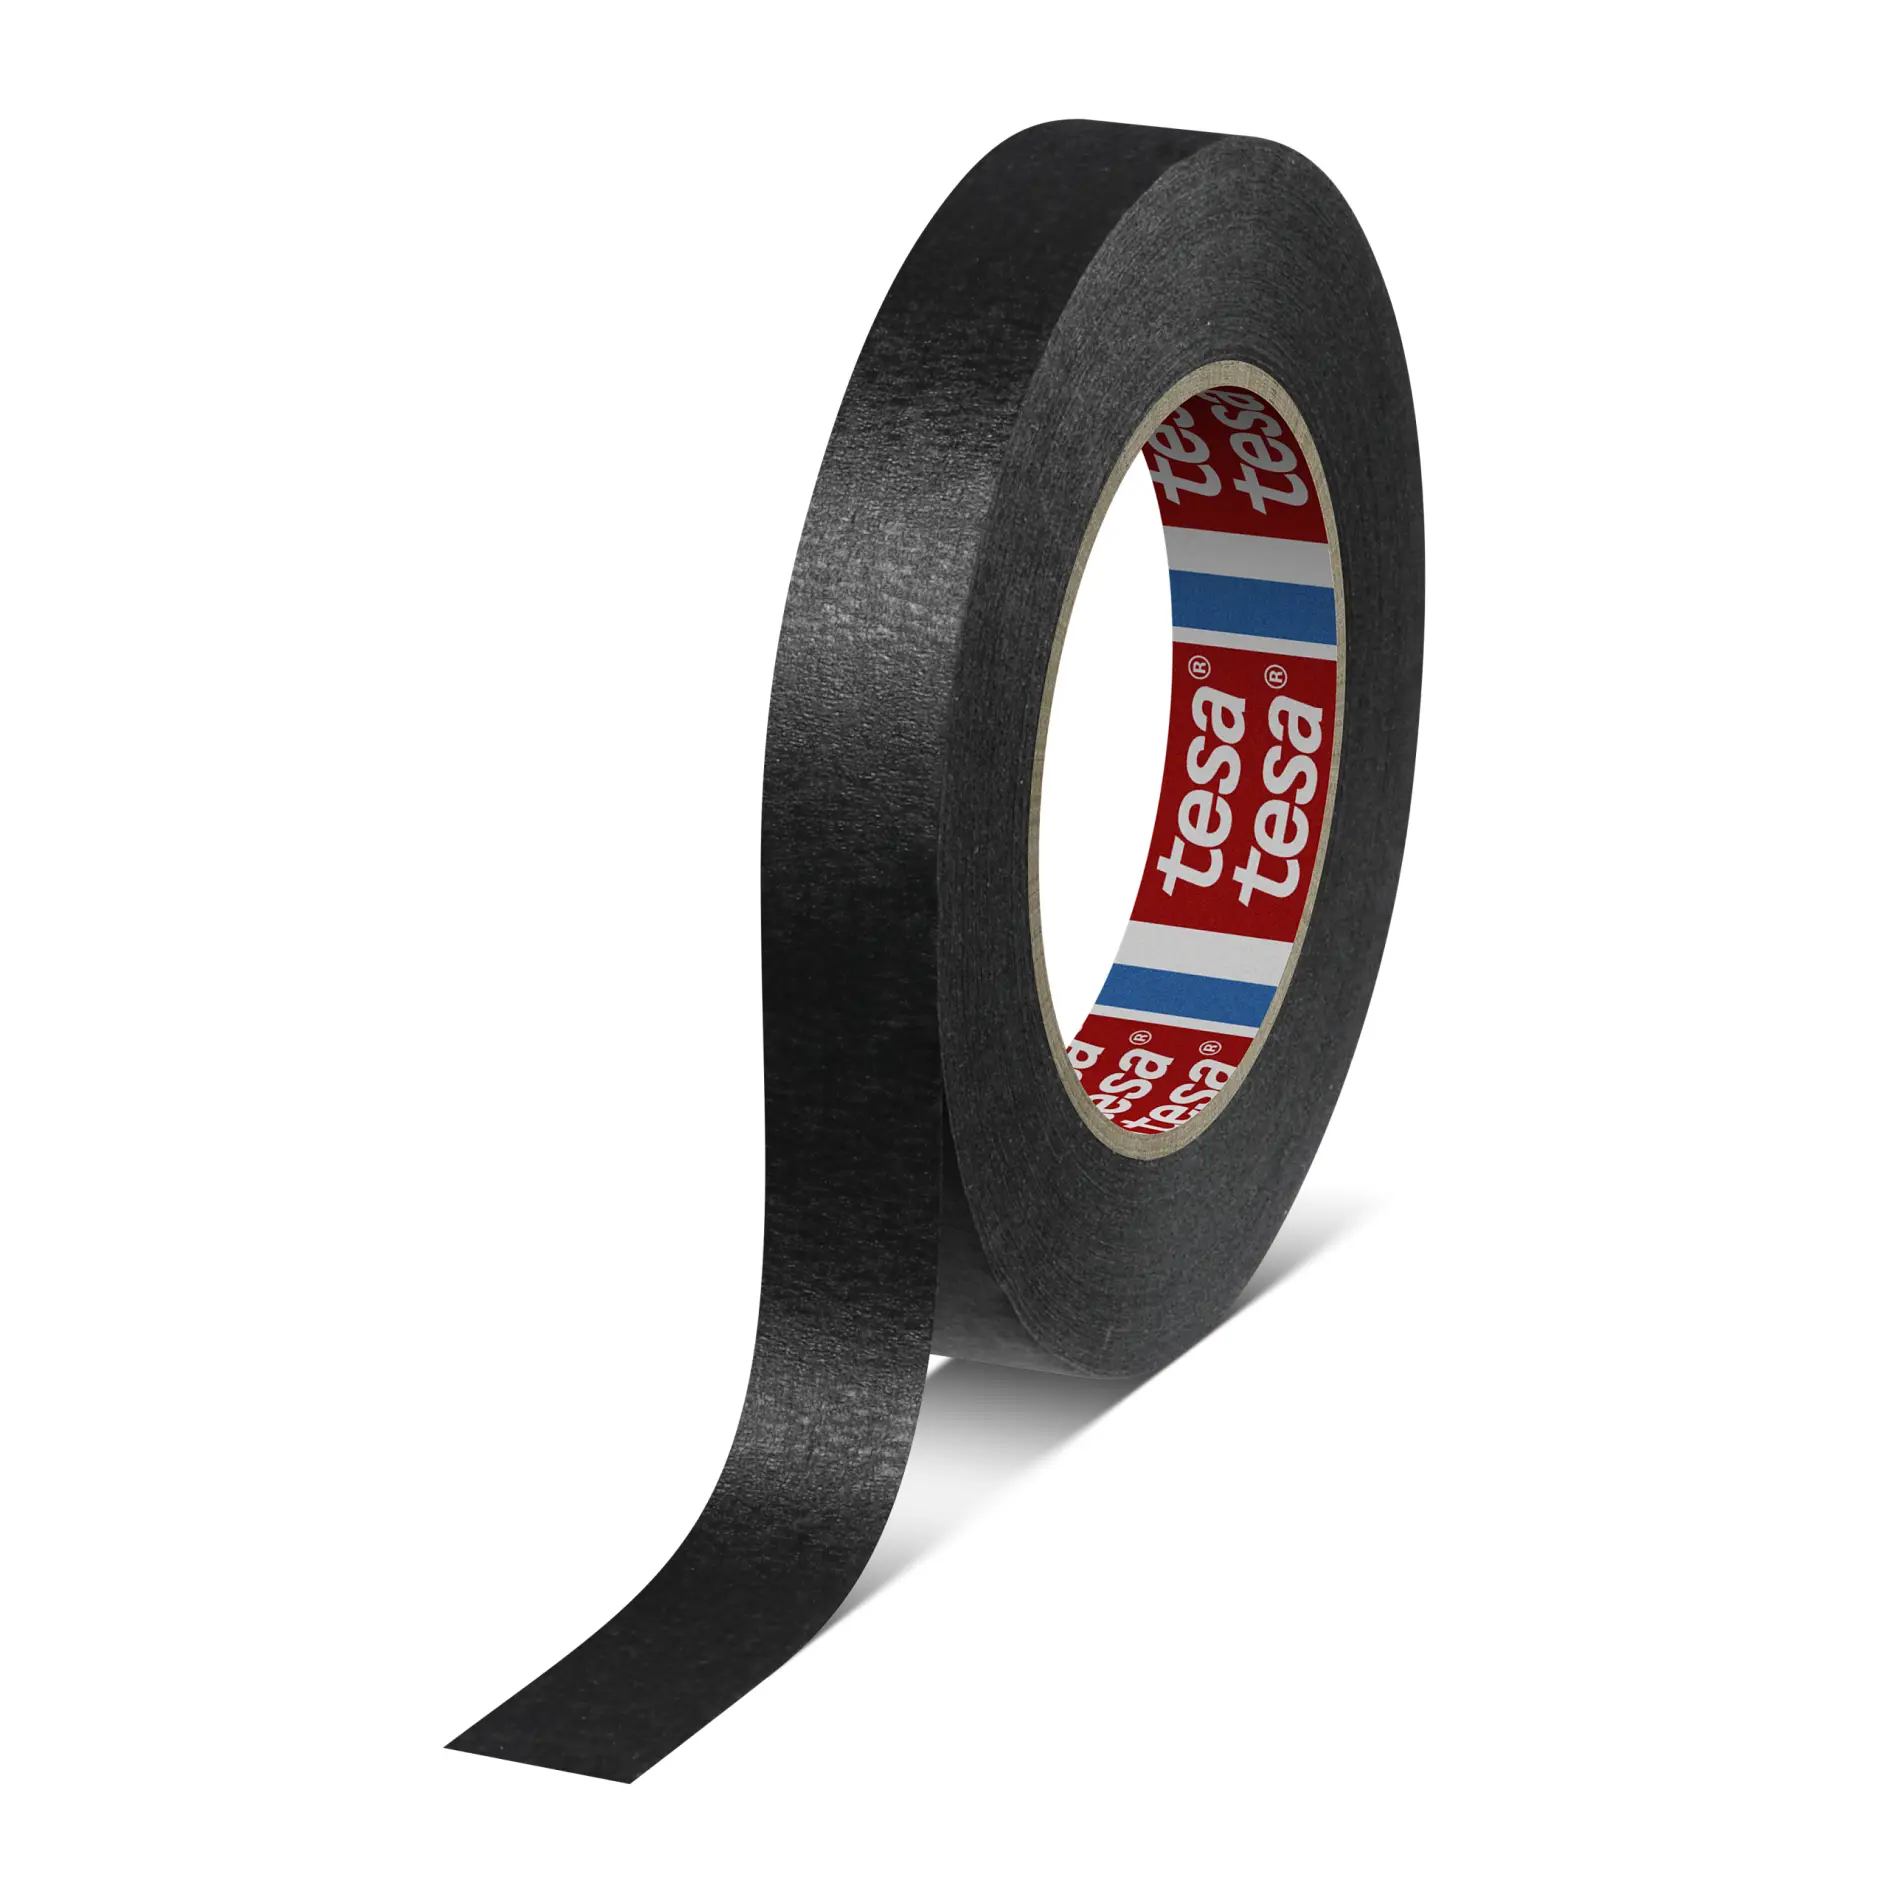 tesa-4328-quality-general-purpose-paper-masking-tape-black-043280000600-pr